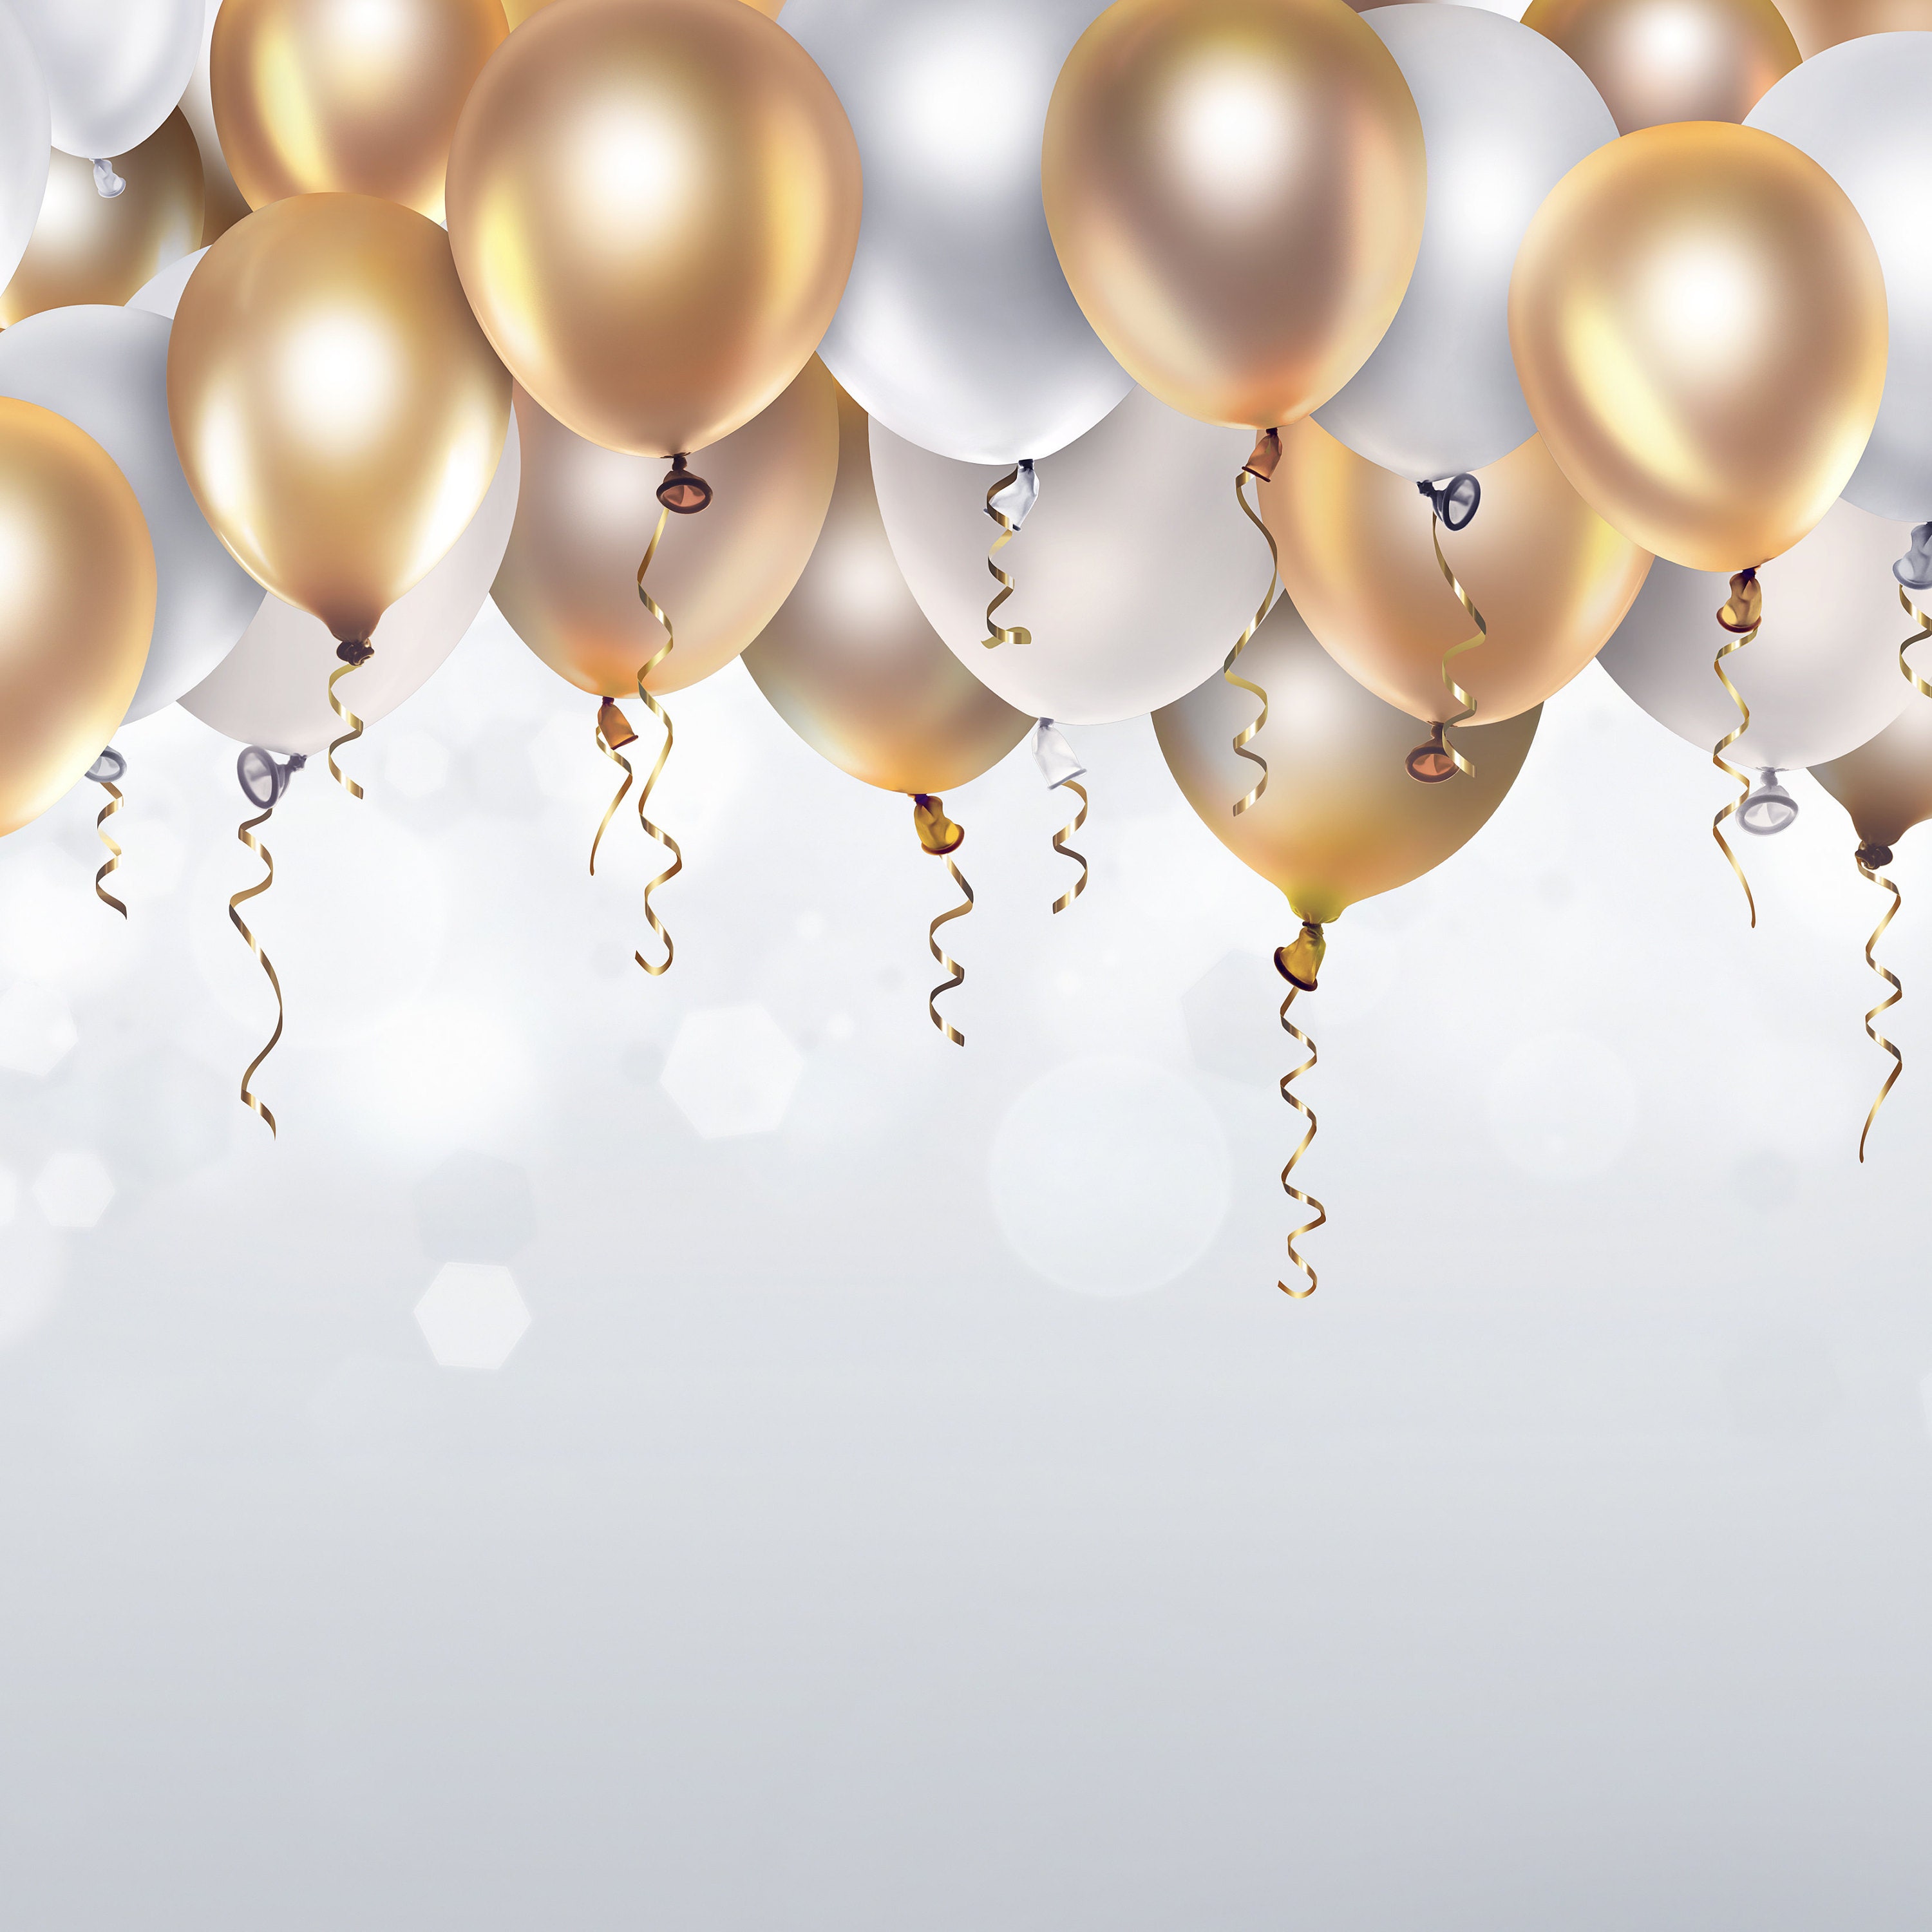 Arche de ballons vert sauge, confettis et argent de qualité supérieure avec  ballons géants pour mariages, douche nuptiale, baby shower, décoration  d'anniversaire -  Canada